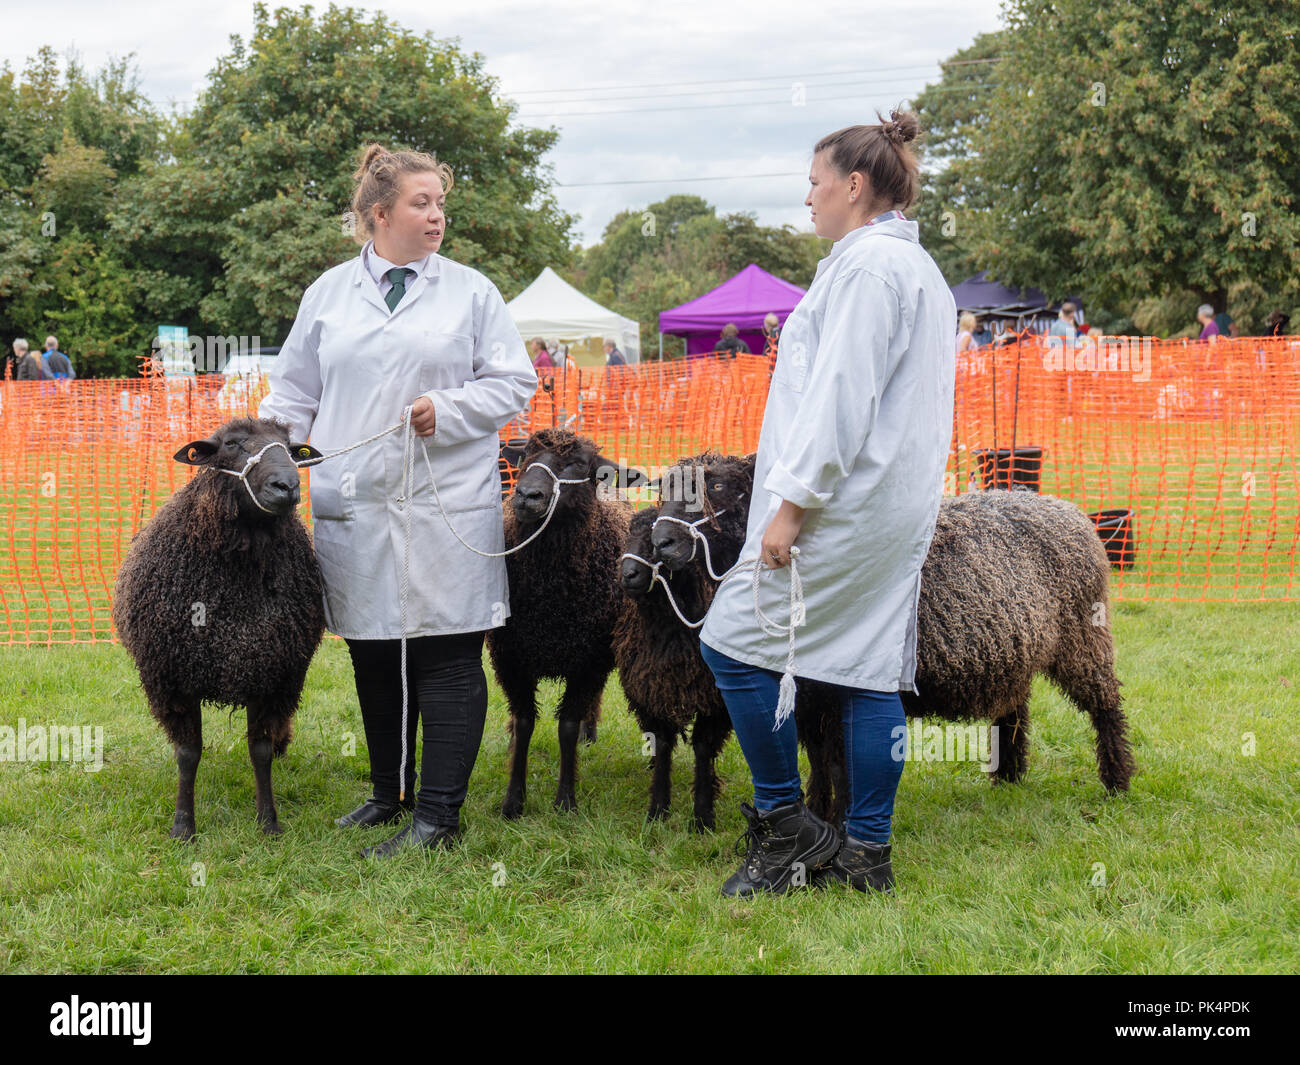 Findon, Sussex, UK, 8. September 2018; zwei Frauen in weißen Kitteln mit vier schwarzen Schafe für Wettbewerb warten Beurteilung bei Schafen Fair zu nehmen Stockfoto